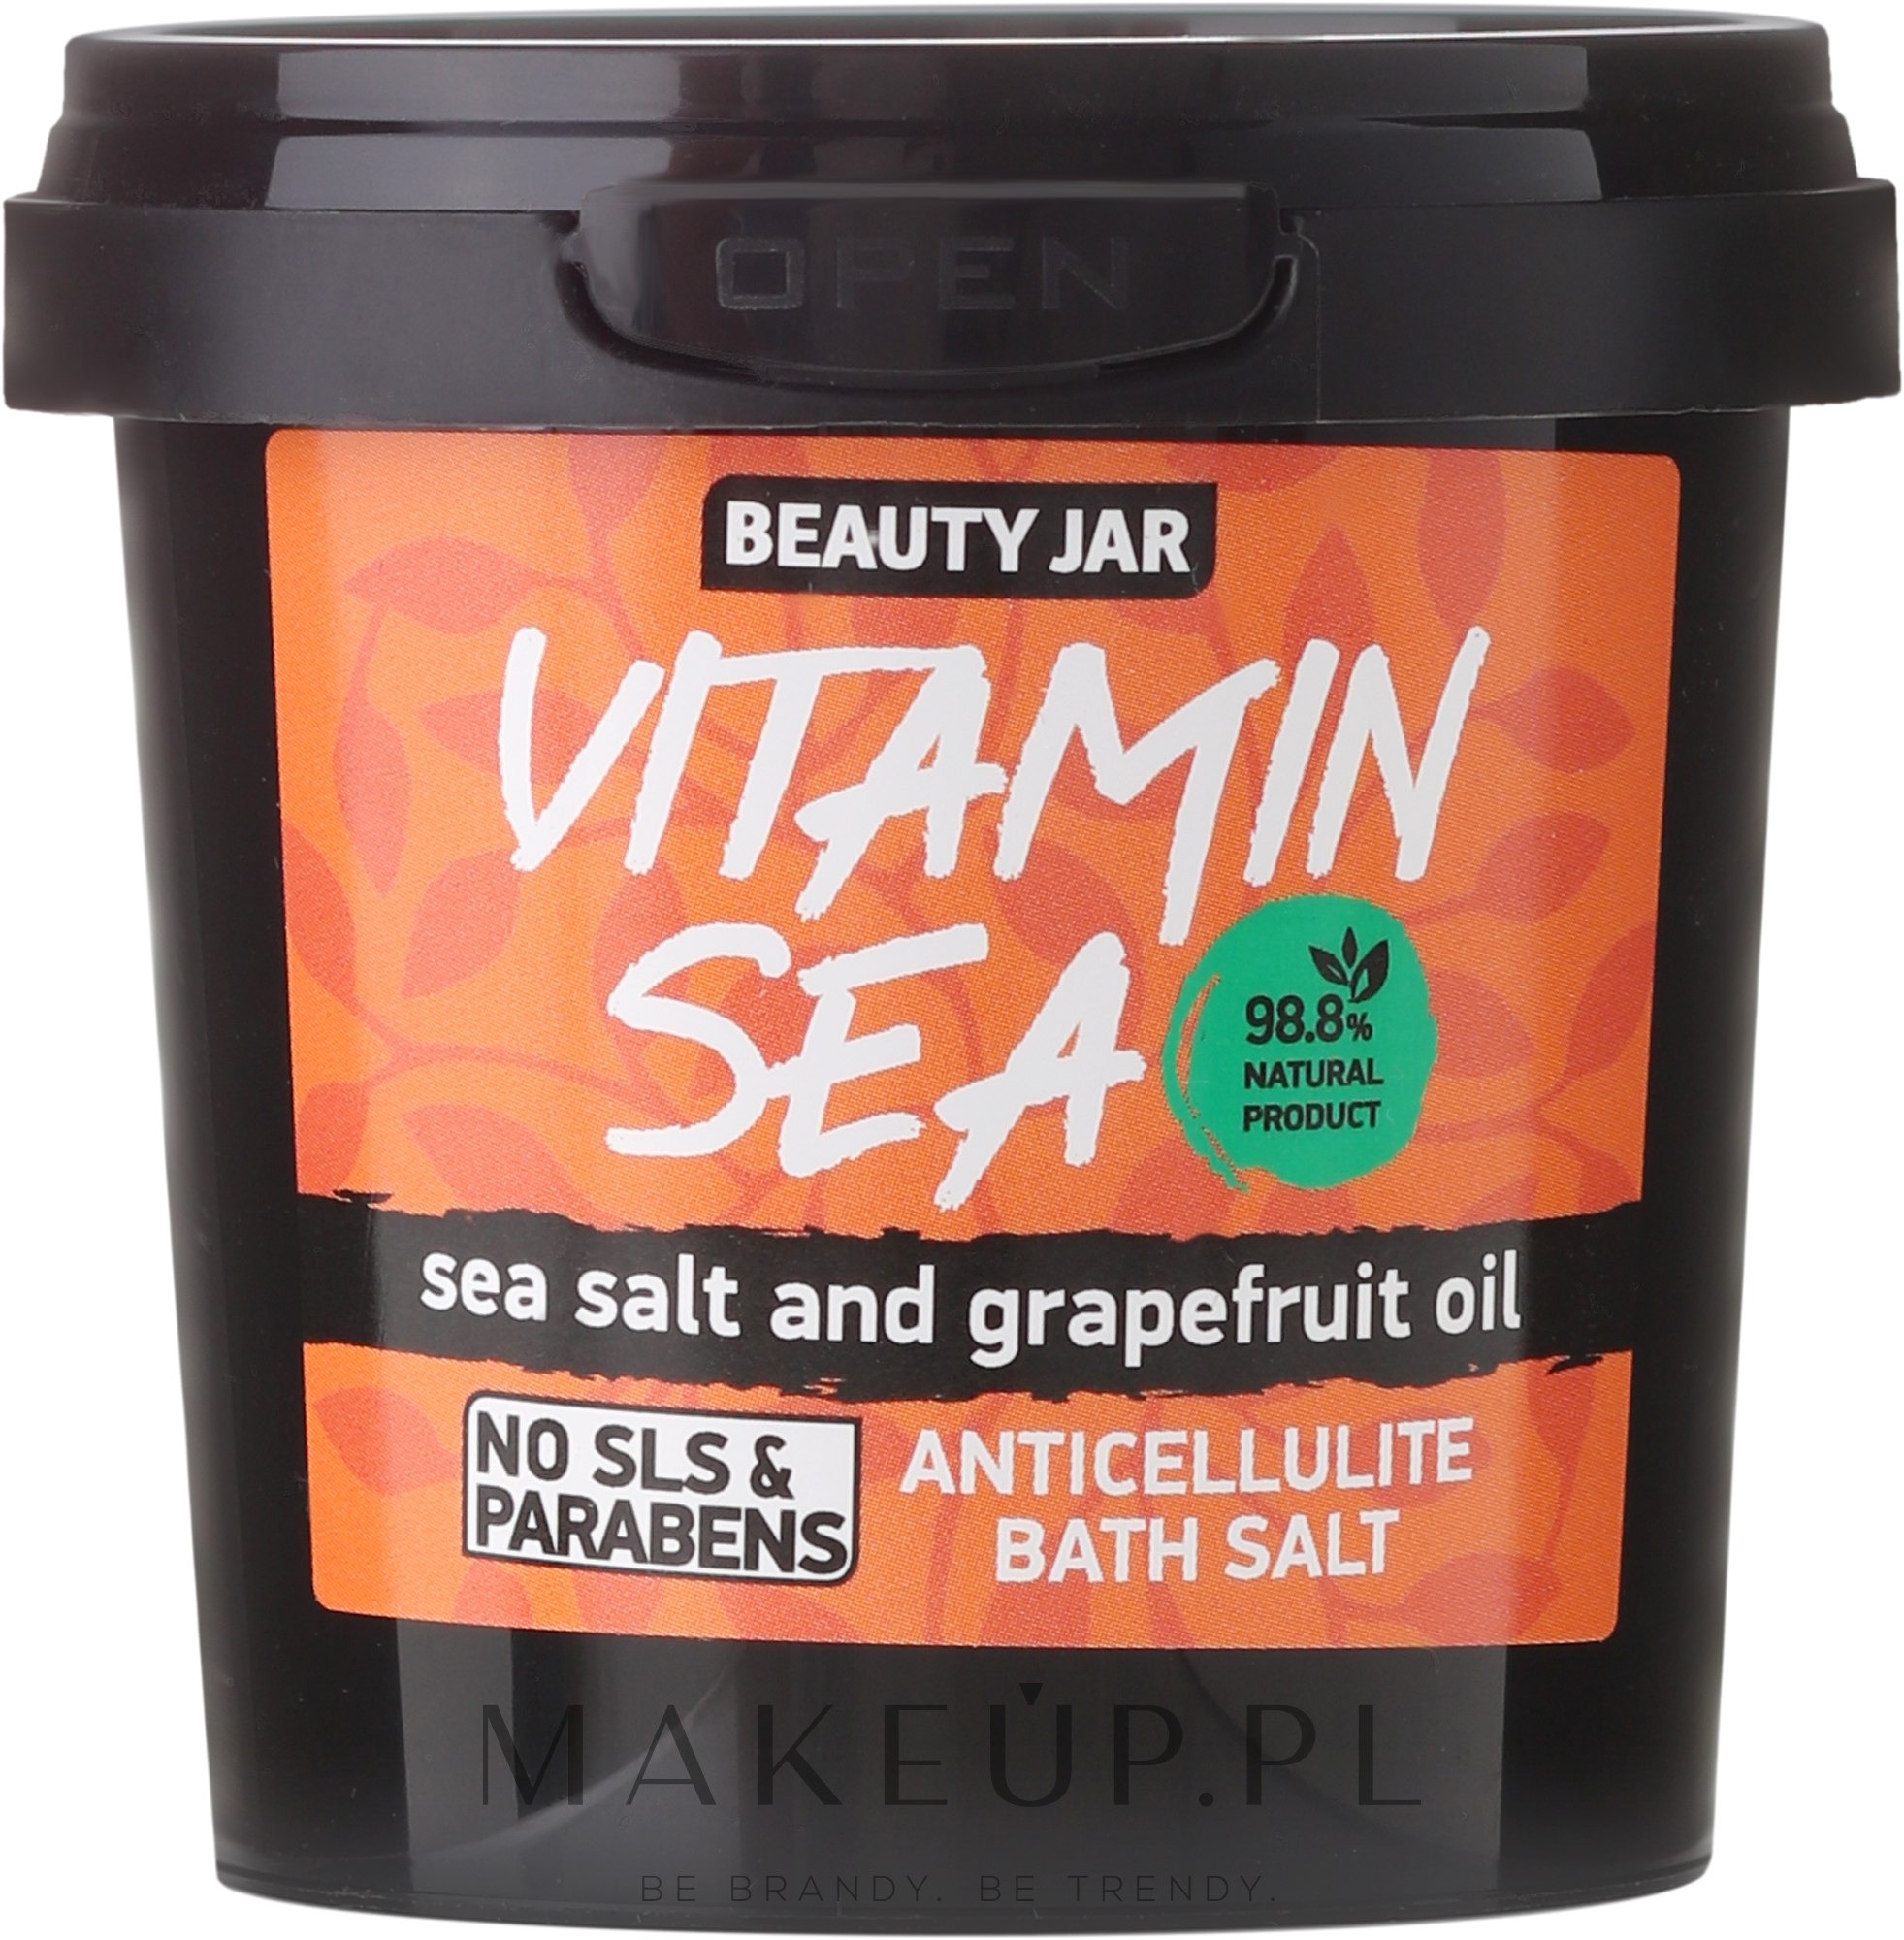 Antycellulitowa sól morska do kąpieli z olejkiem grejpfrutowym - Beauty Jar Vitamin Sea Anticellulite Bath Salt — Zdjęcie 200 g